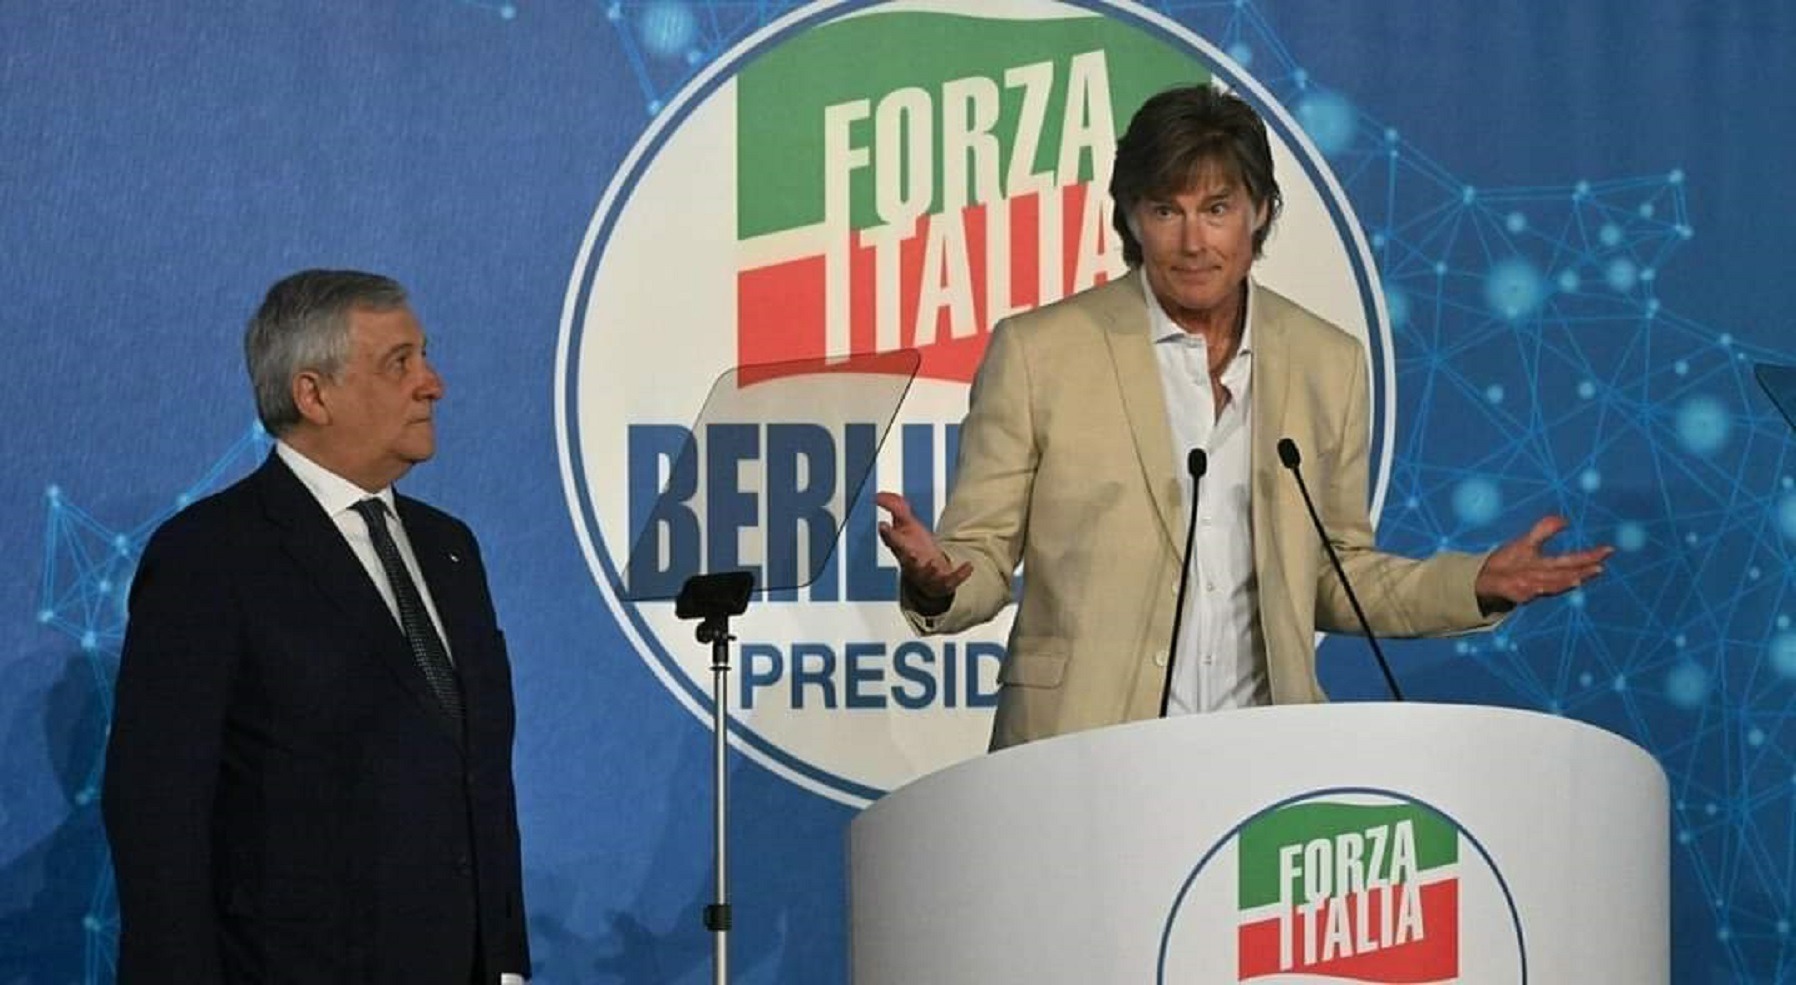 Ron Moss Forza Italia Berlusconi